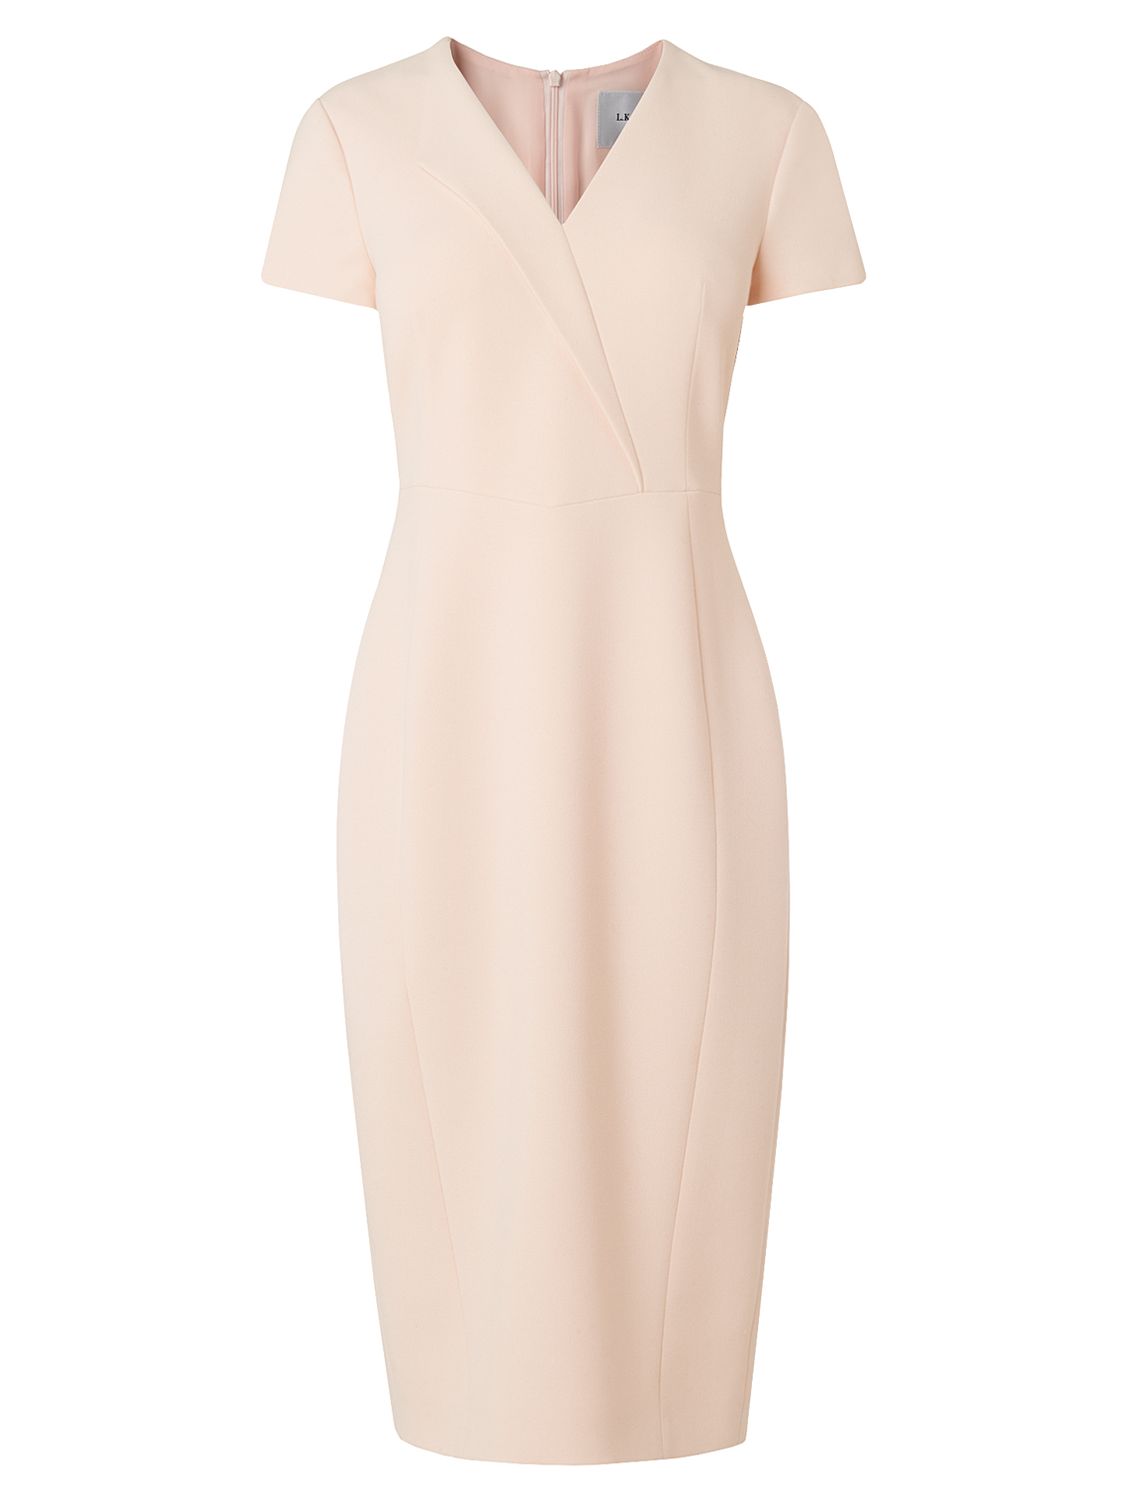 L.K. Bennett Eline Collar Detail Dress, Cream at John Lewis & Partners